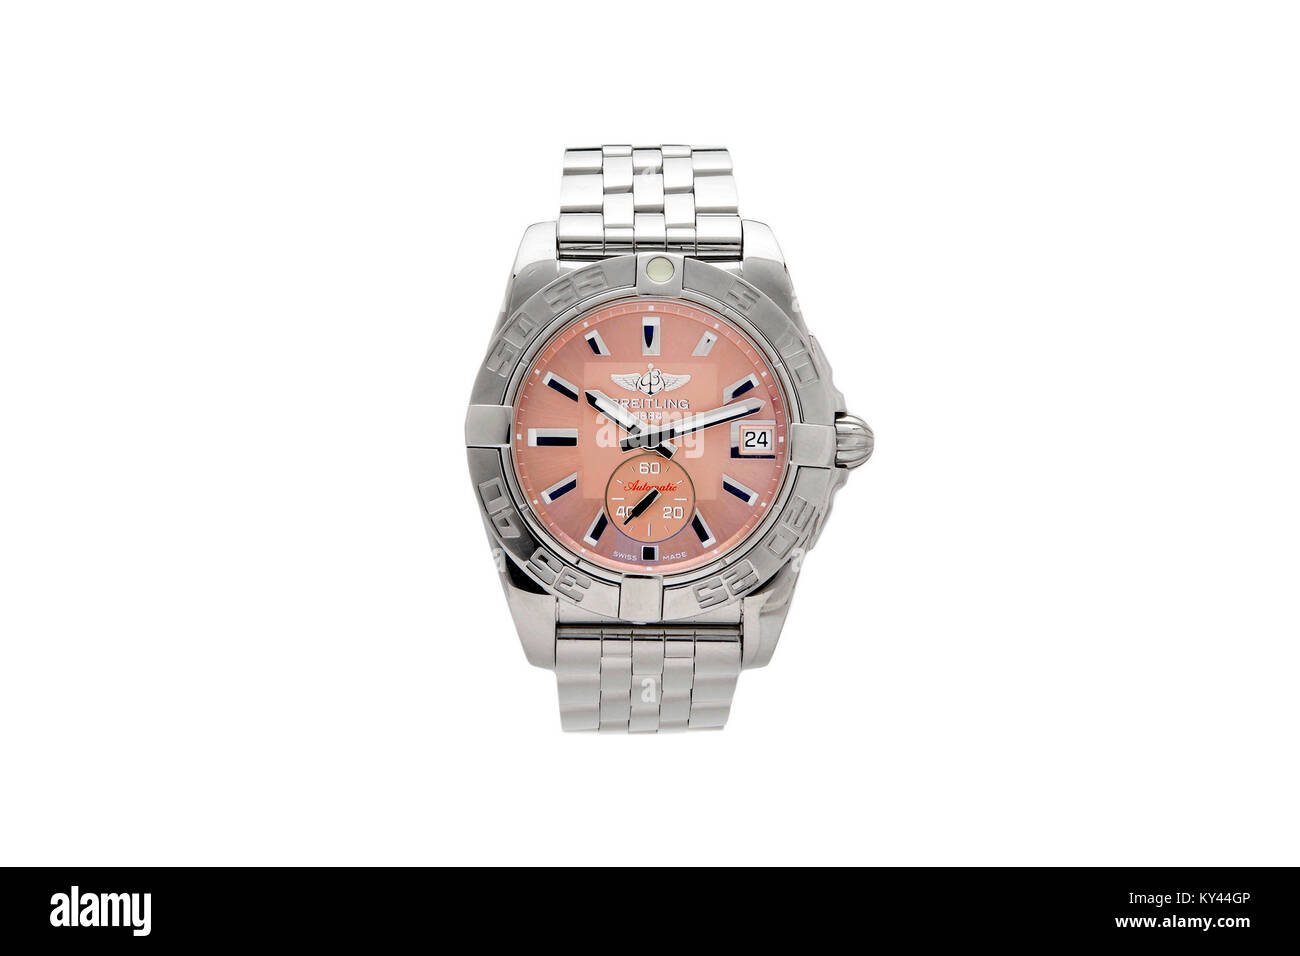 Breitling reloj de hombre de acero inoxidable con cara de rosa Foto de stock